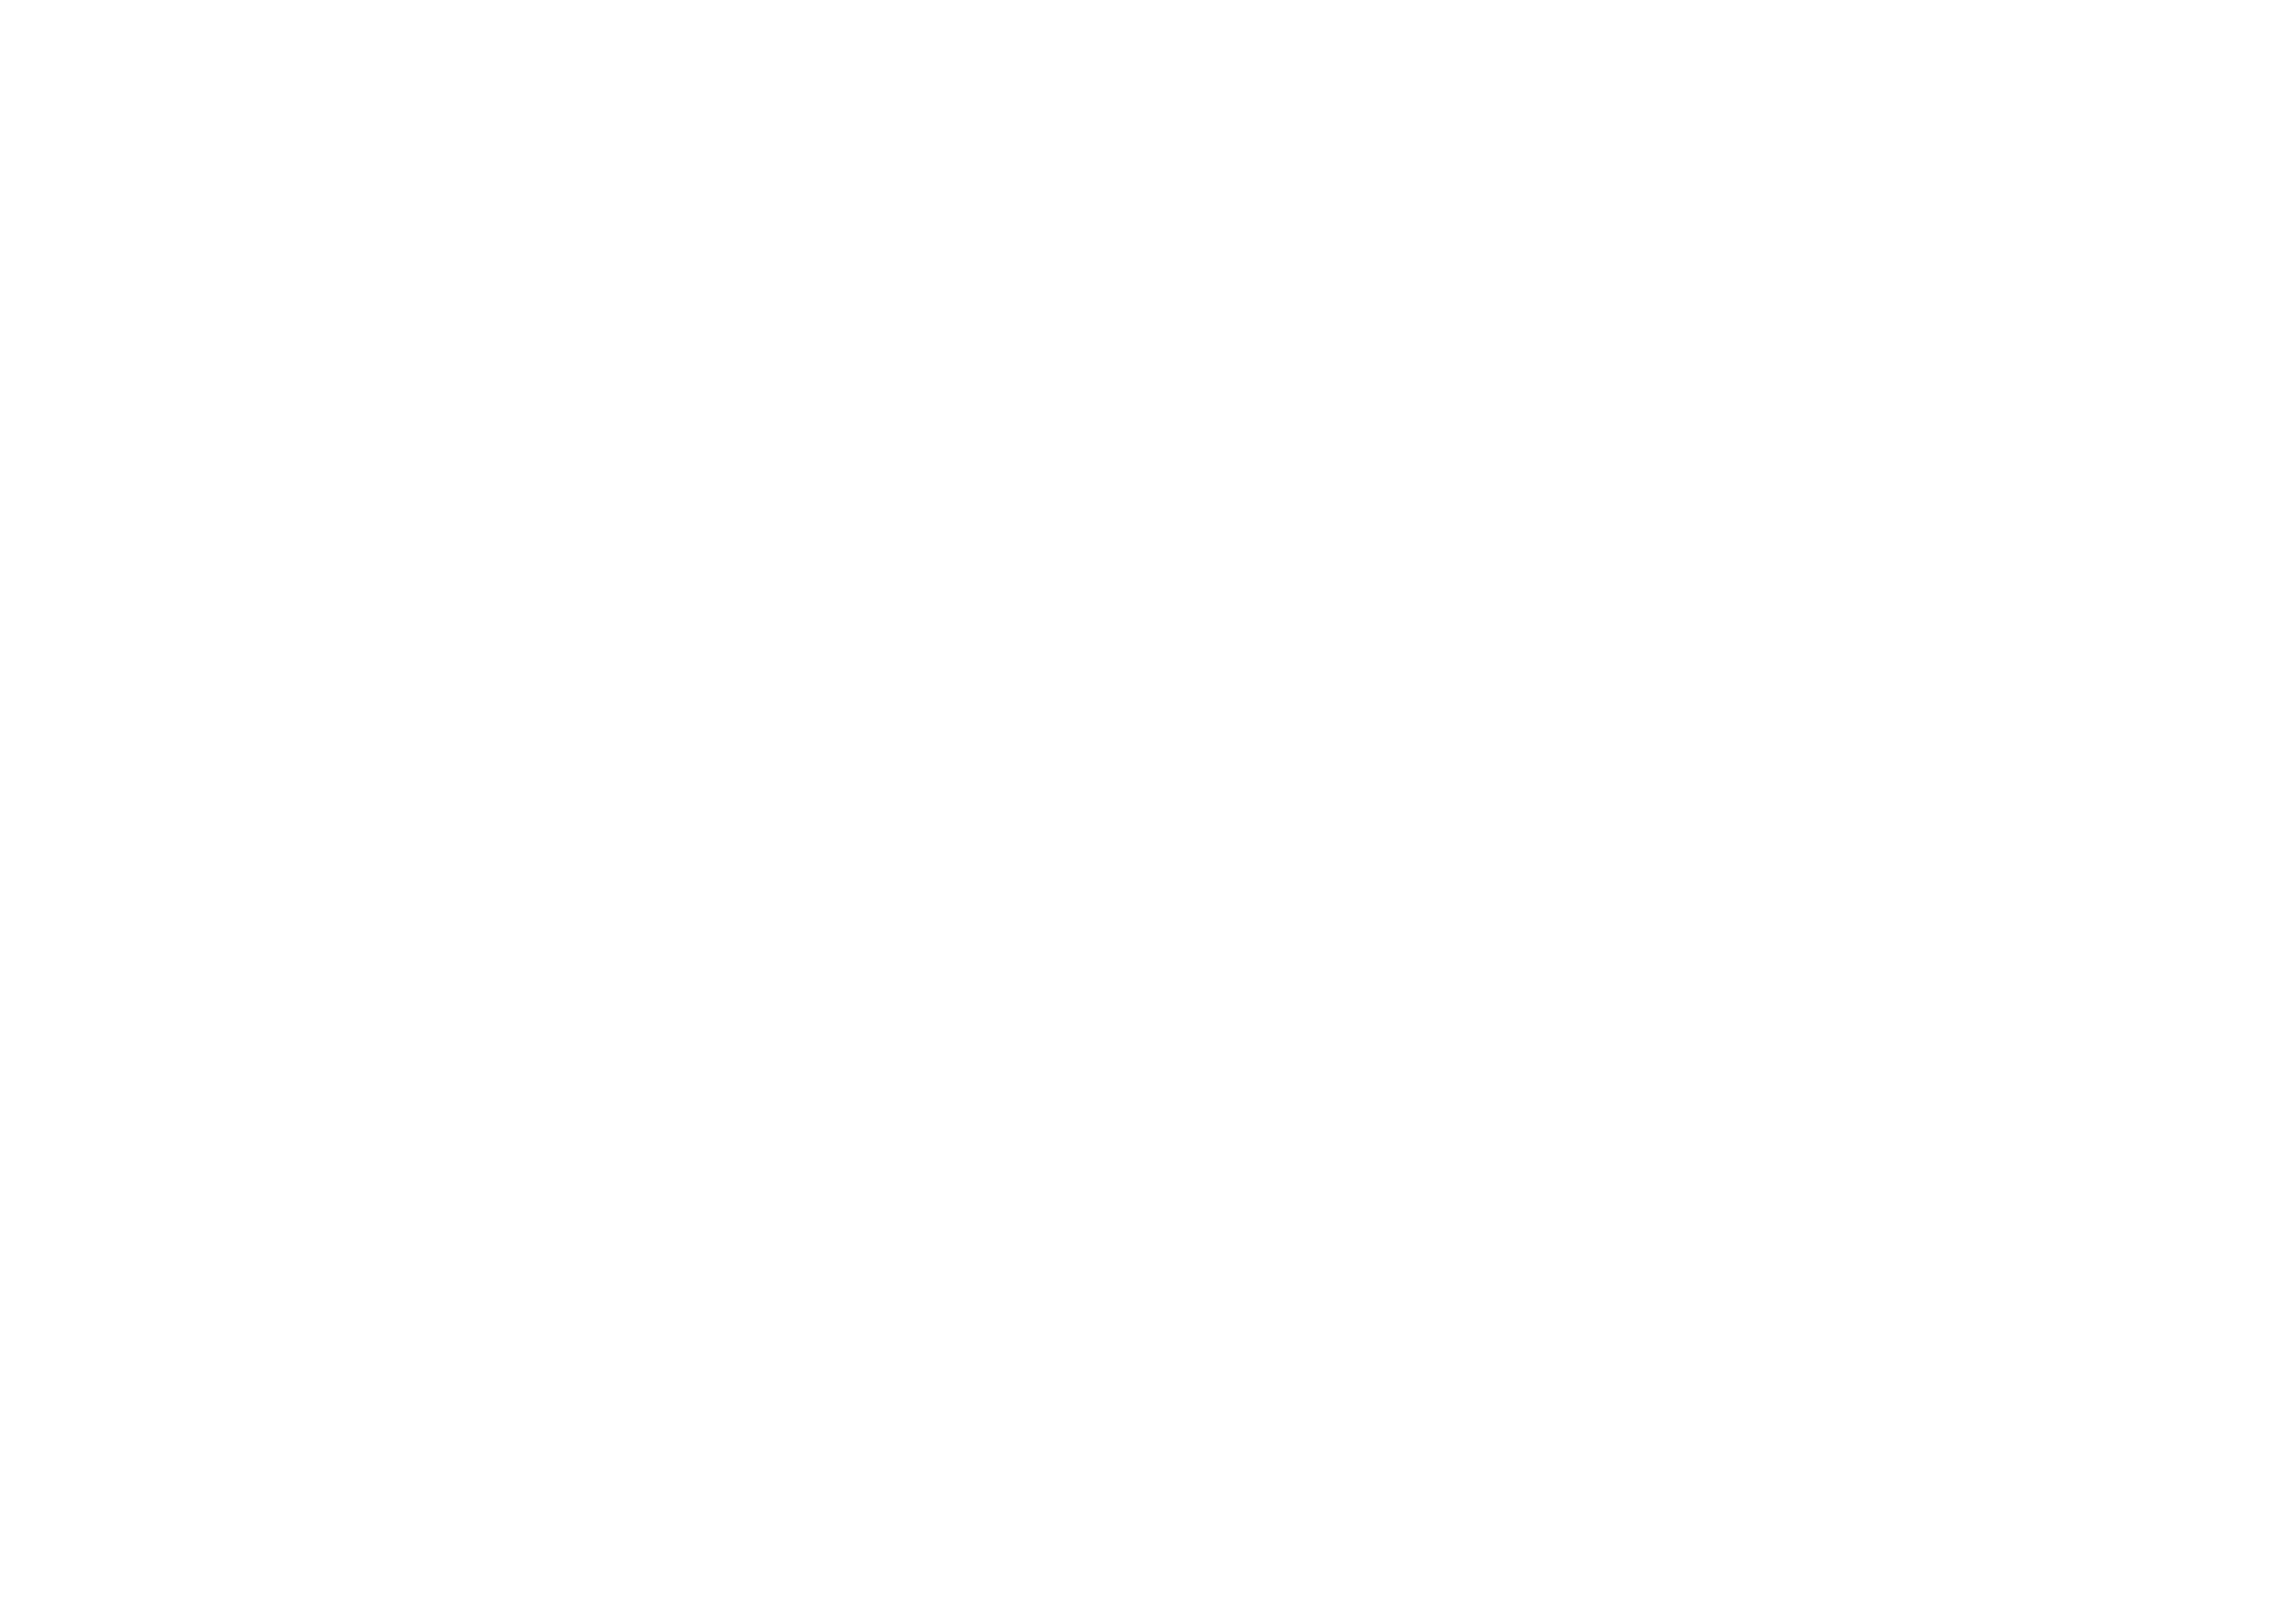 PPF Braking